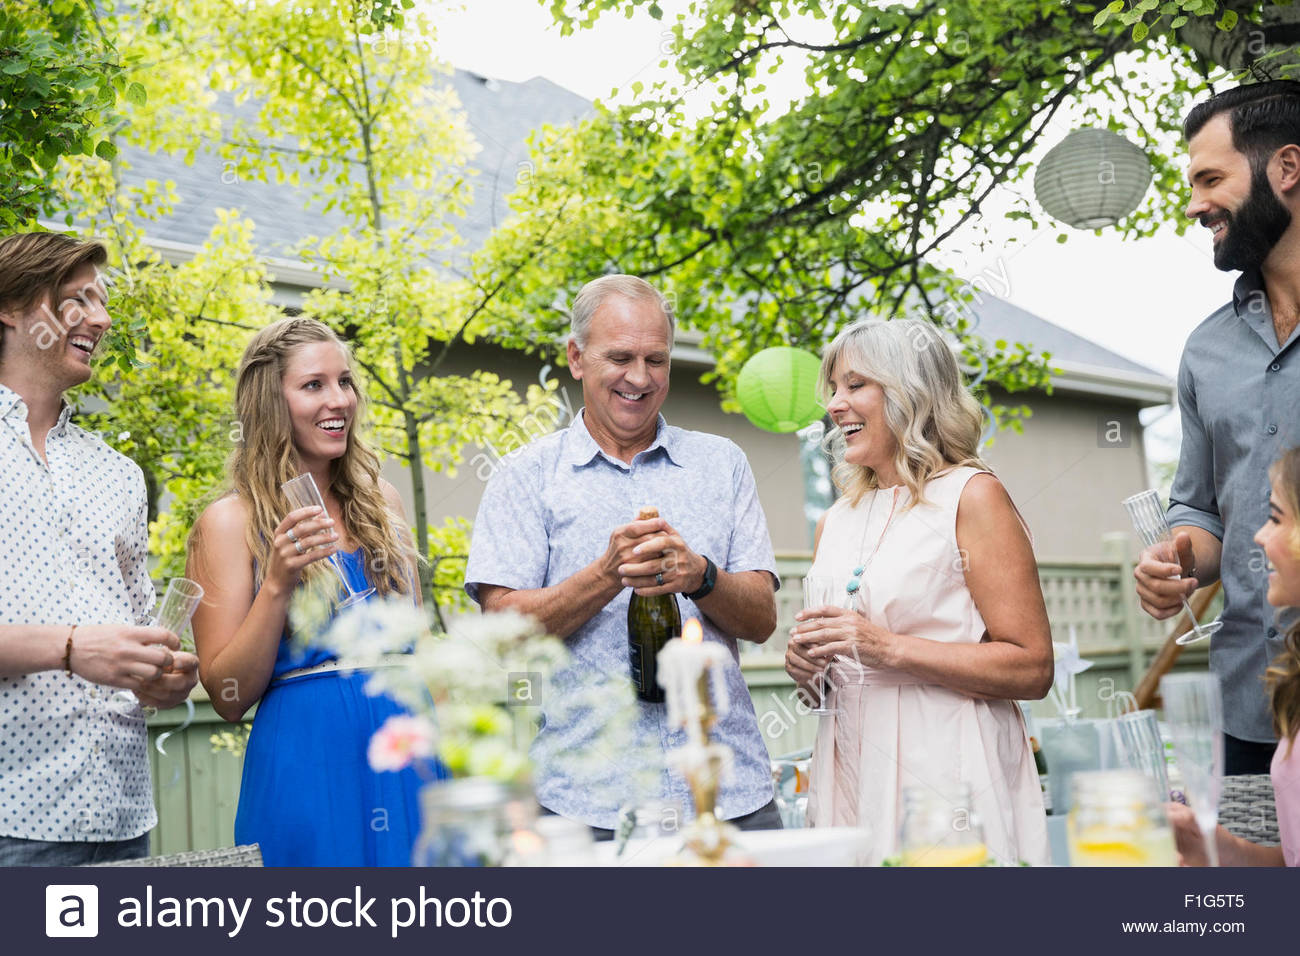 El hombre la apertura de botella de champán en el garden party almuerzo Foto de stock